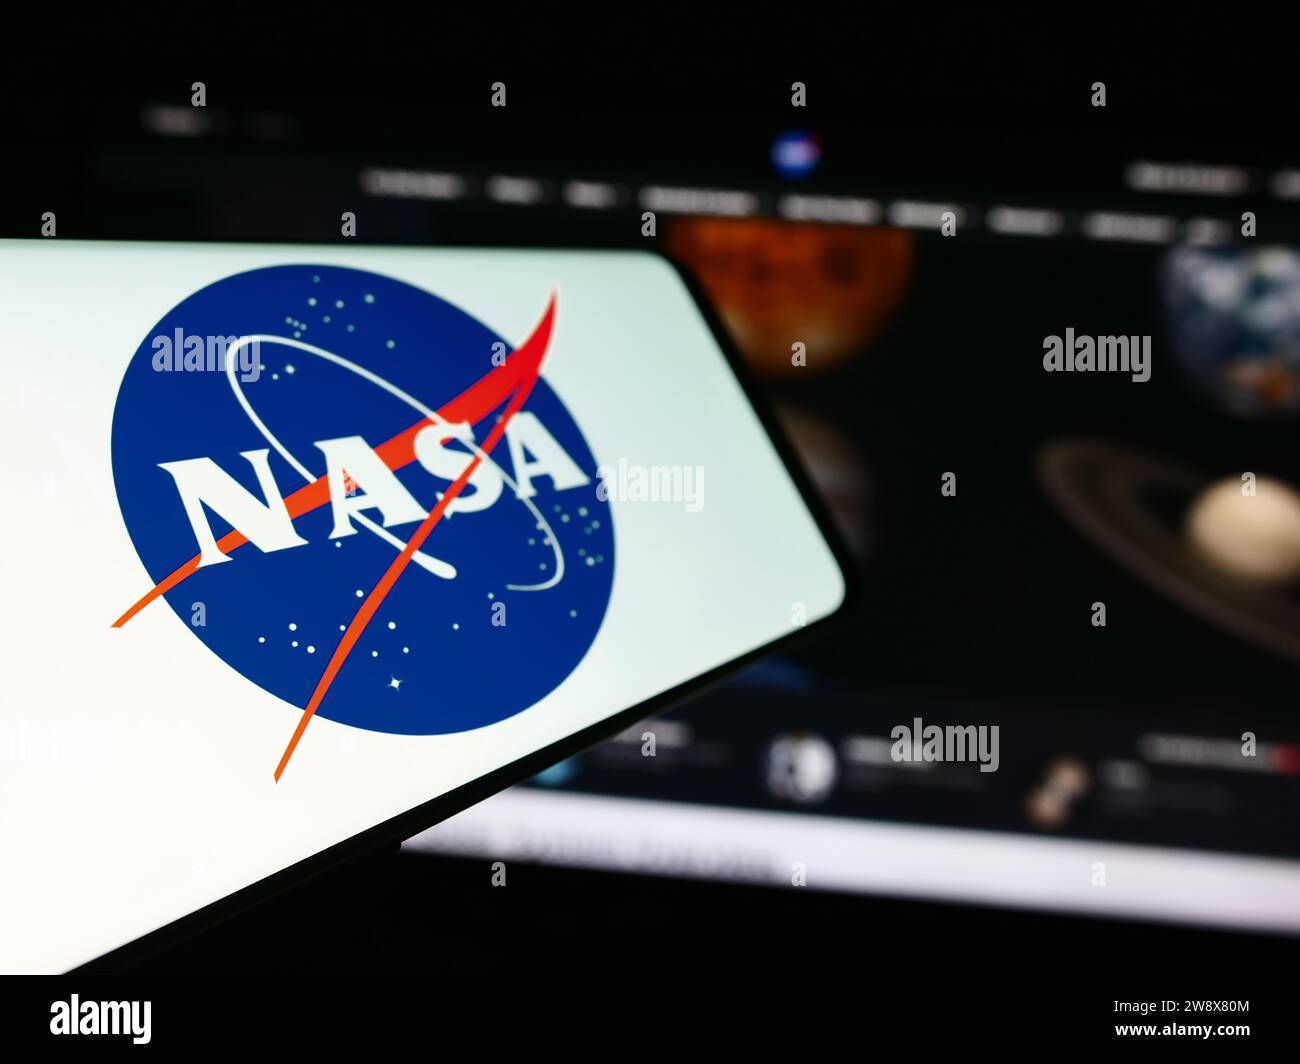 Teléfono móvil con el logotipo de la Administración Nacional de Aeronáutica y del Espacio (NASA) en frente del sitio web. Enfoque a la izquierda de la pantalla del teléfono. Foto de stock